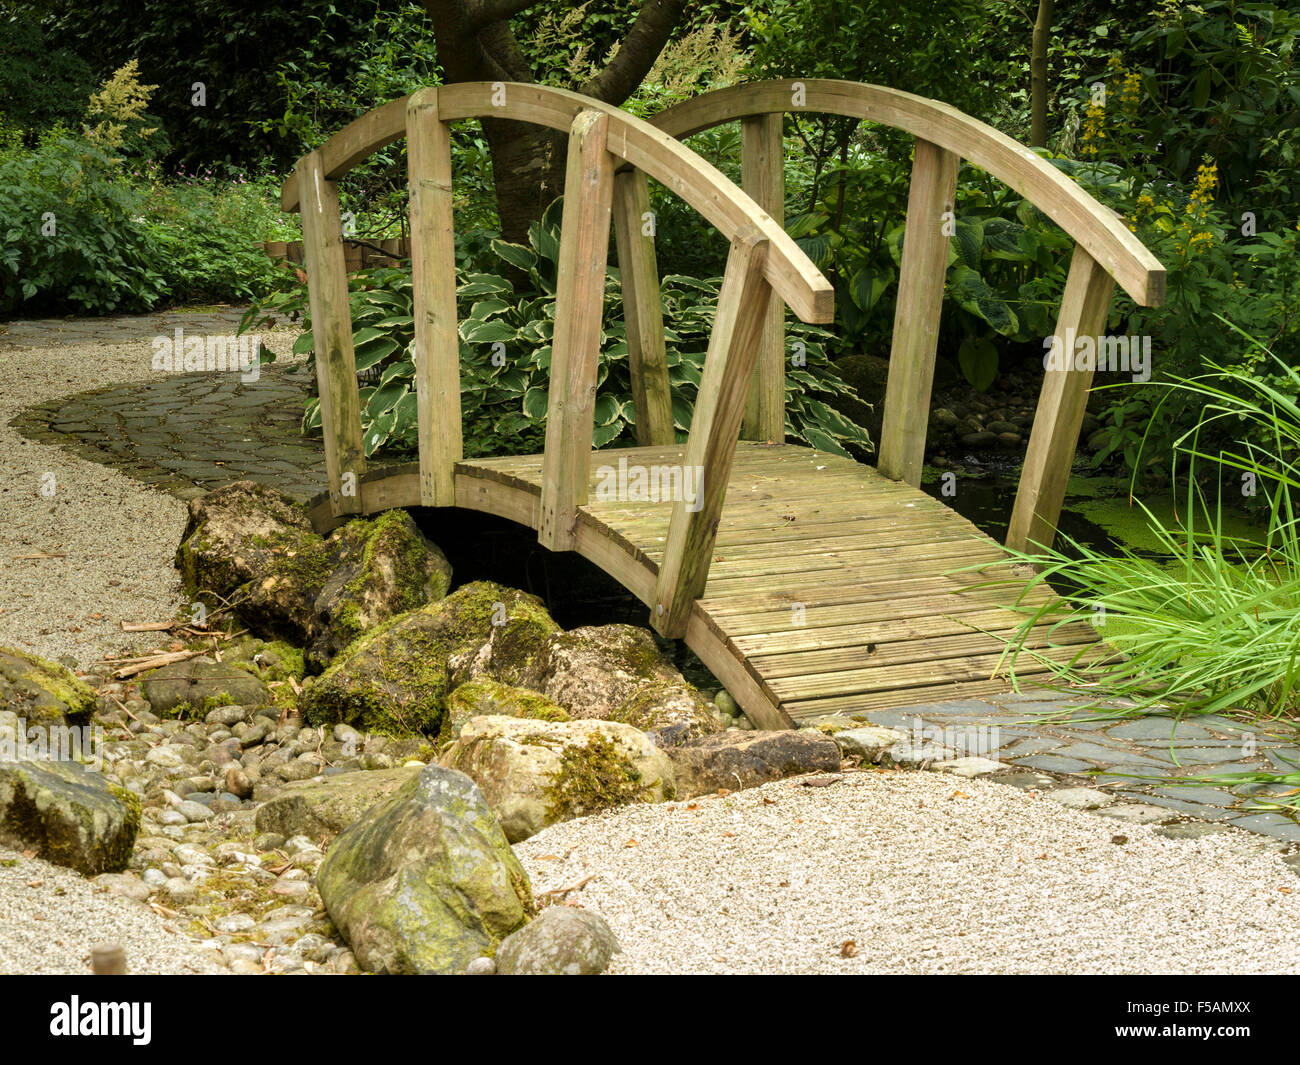 Japanische Zen Stil Garten geharkt Kies und reich verzierte hölzerne Brücke, Barnsdale Gärten, Rutland, England, UK. Stockfoto